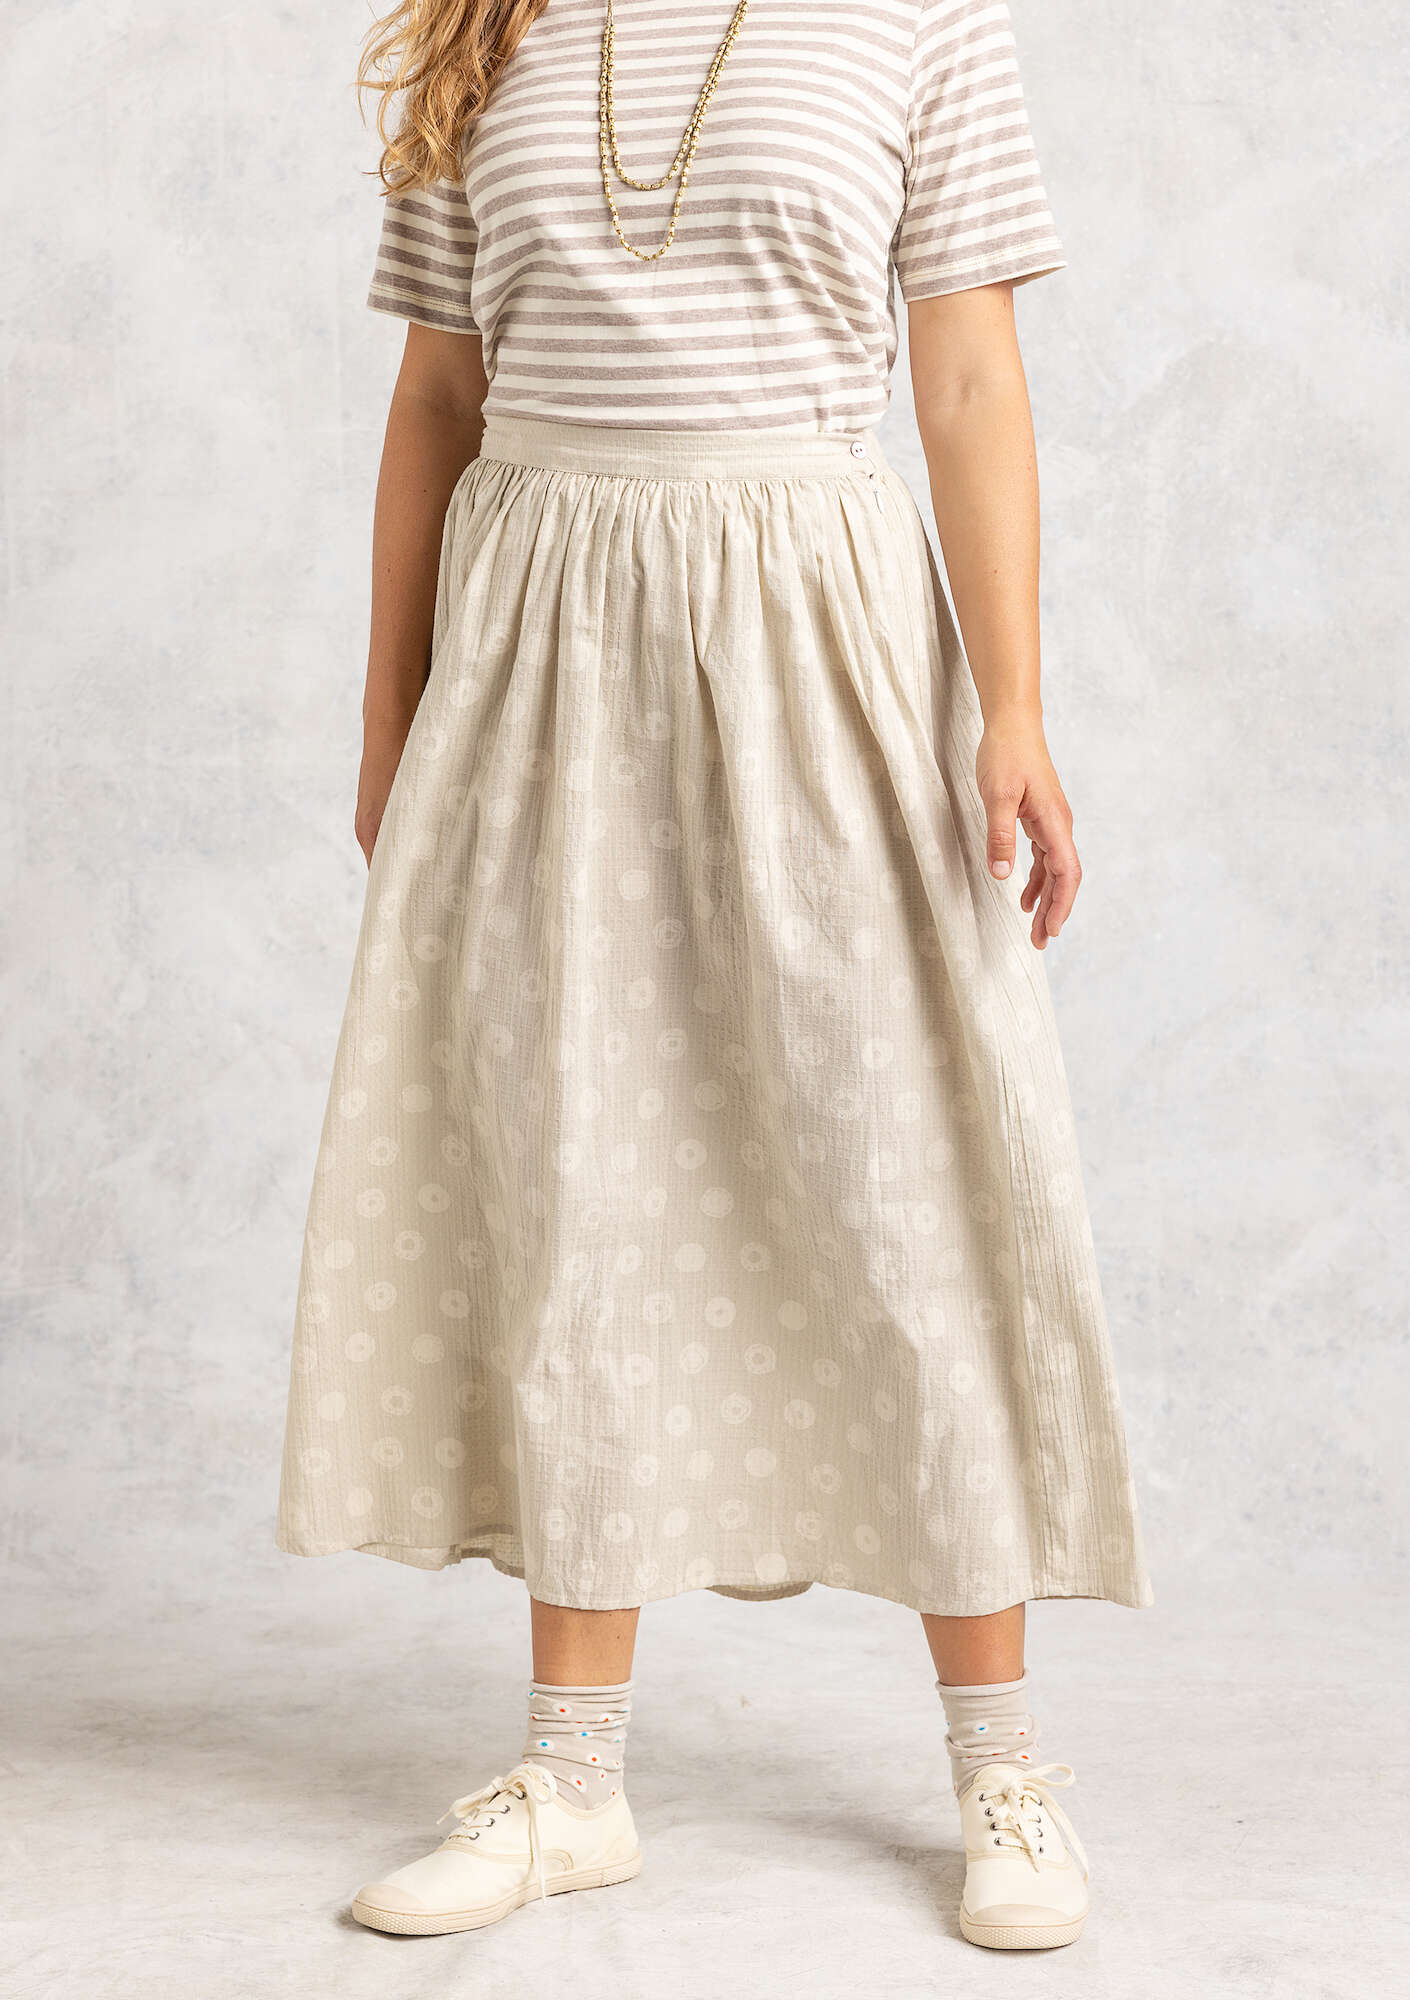 Hilda skirt natural/patterned